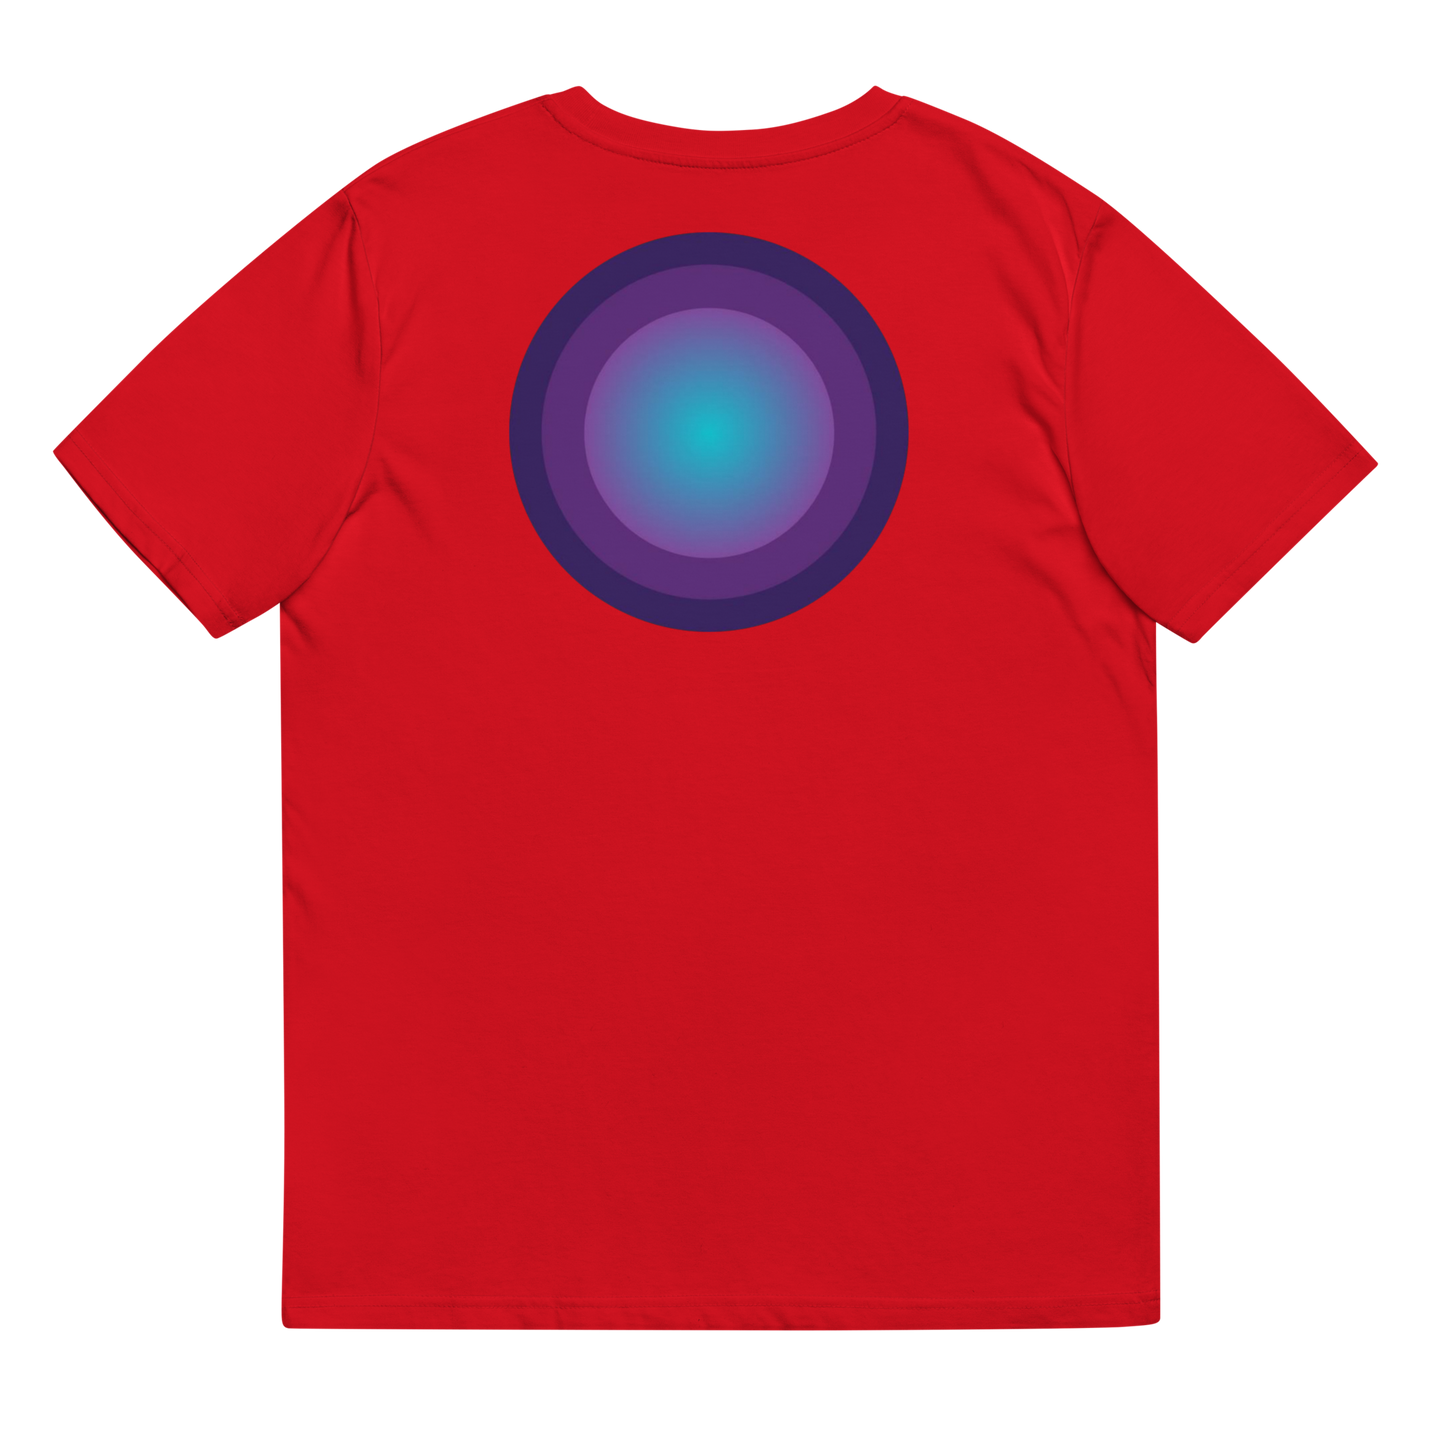 T-Shirt - Dioné V1.0 - Rouge - Premium